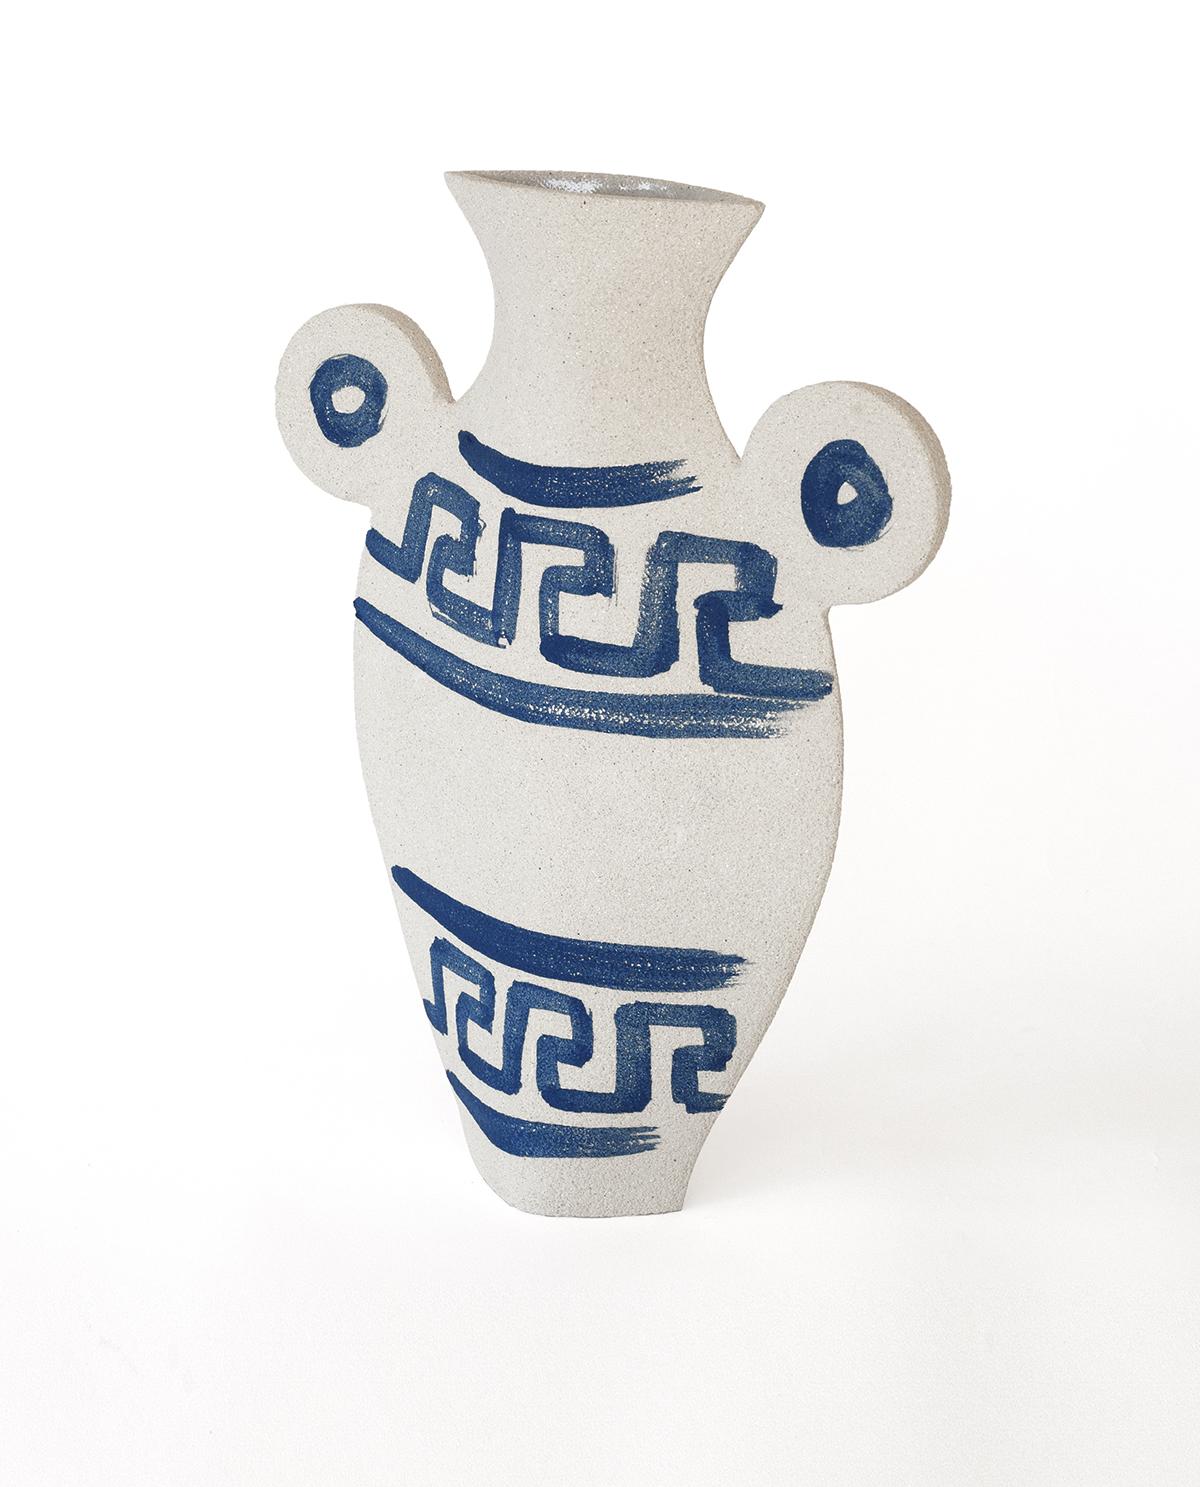 Als Teil eines fesselnden Triptychons, das antike griechische Keramik mit zeitgenössischem Design verbindet, zeigt die Vase Greek [L]